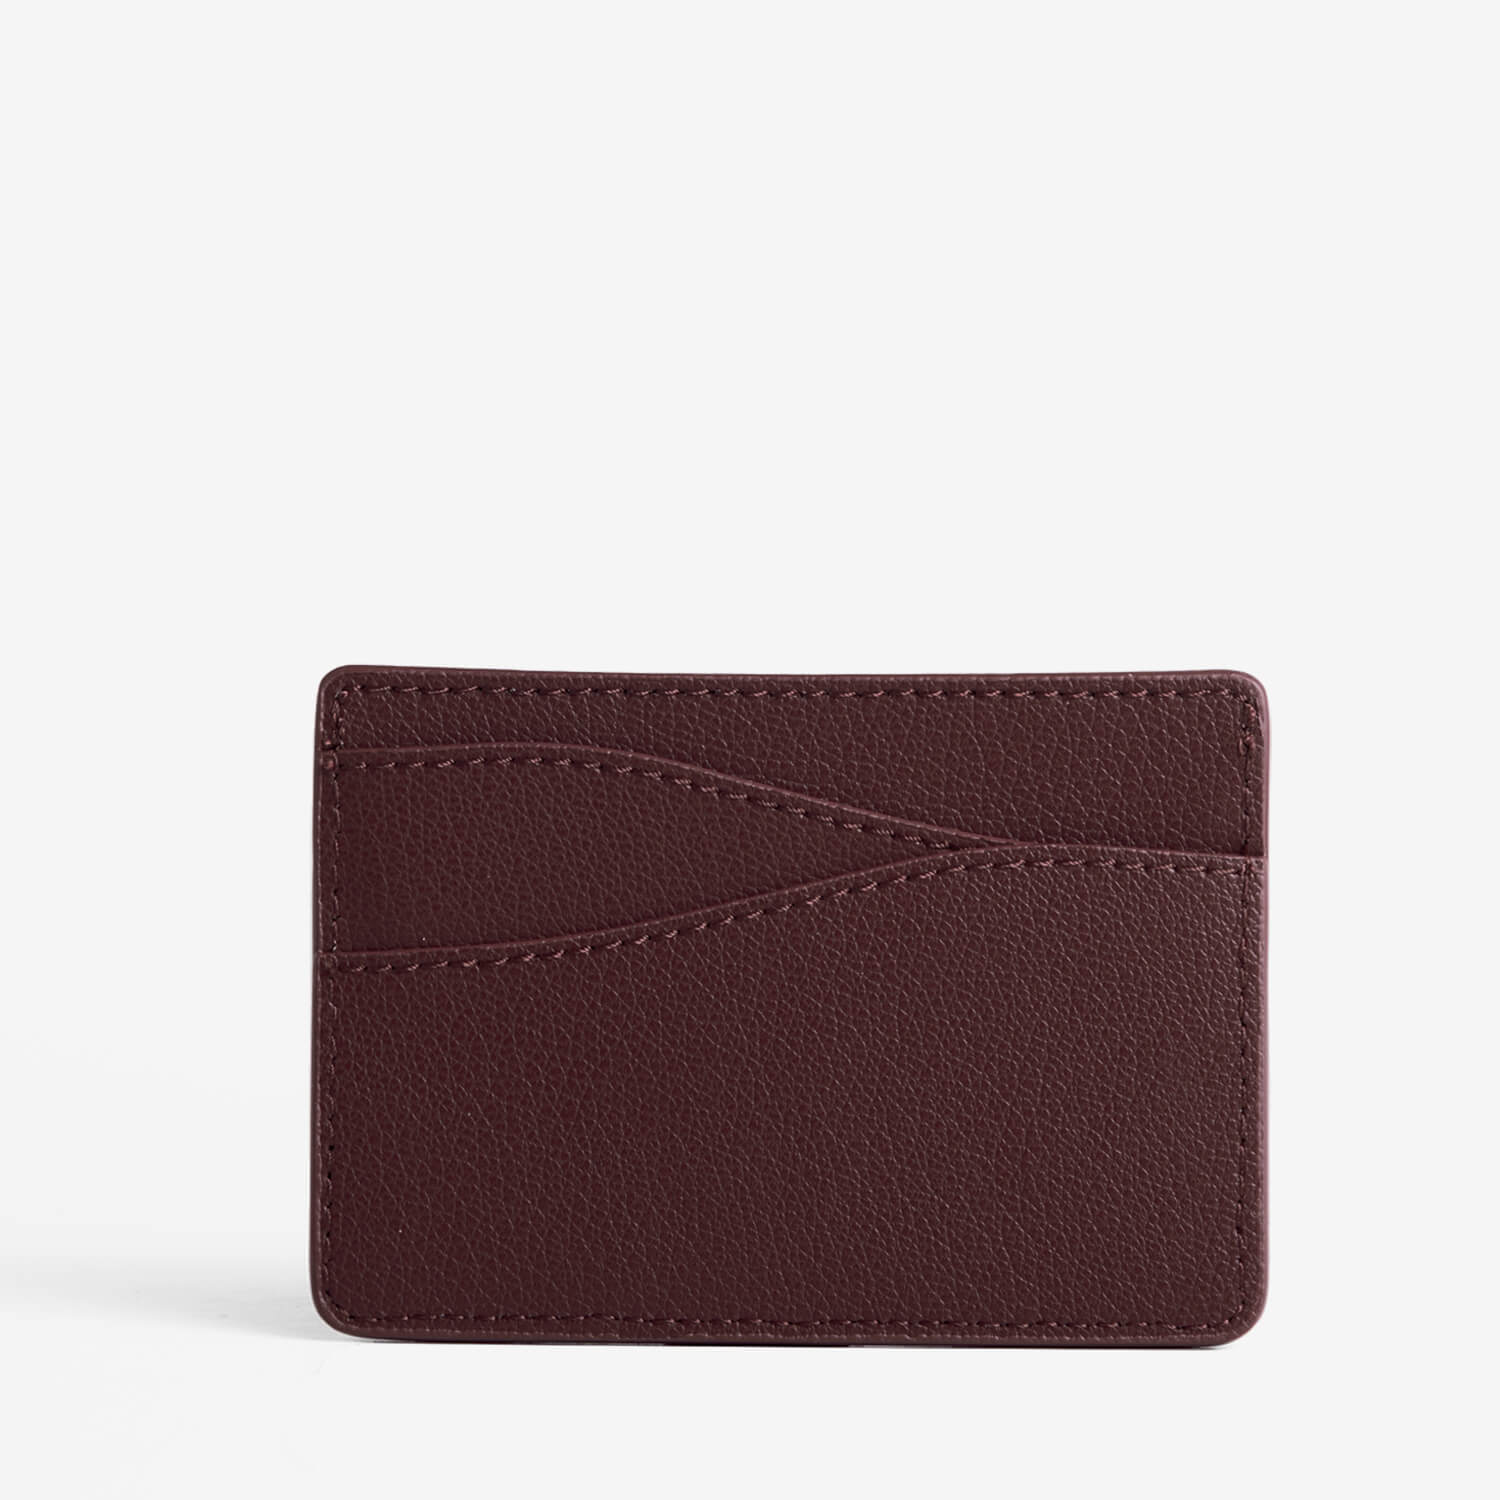 Journeyman wallet